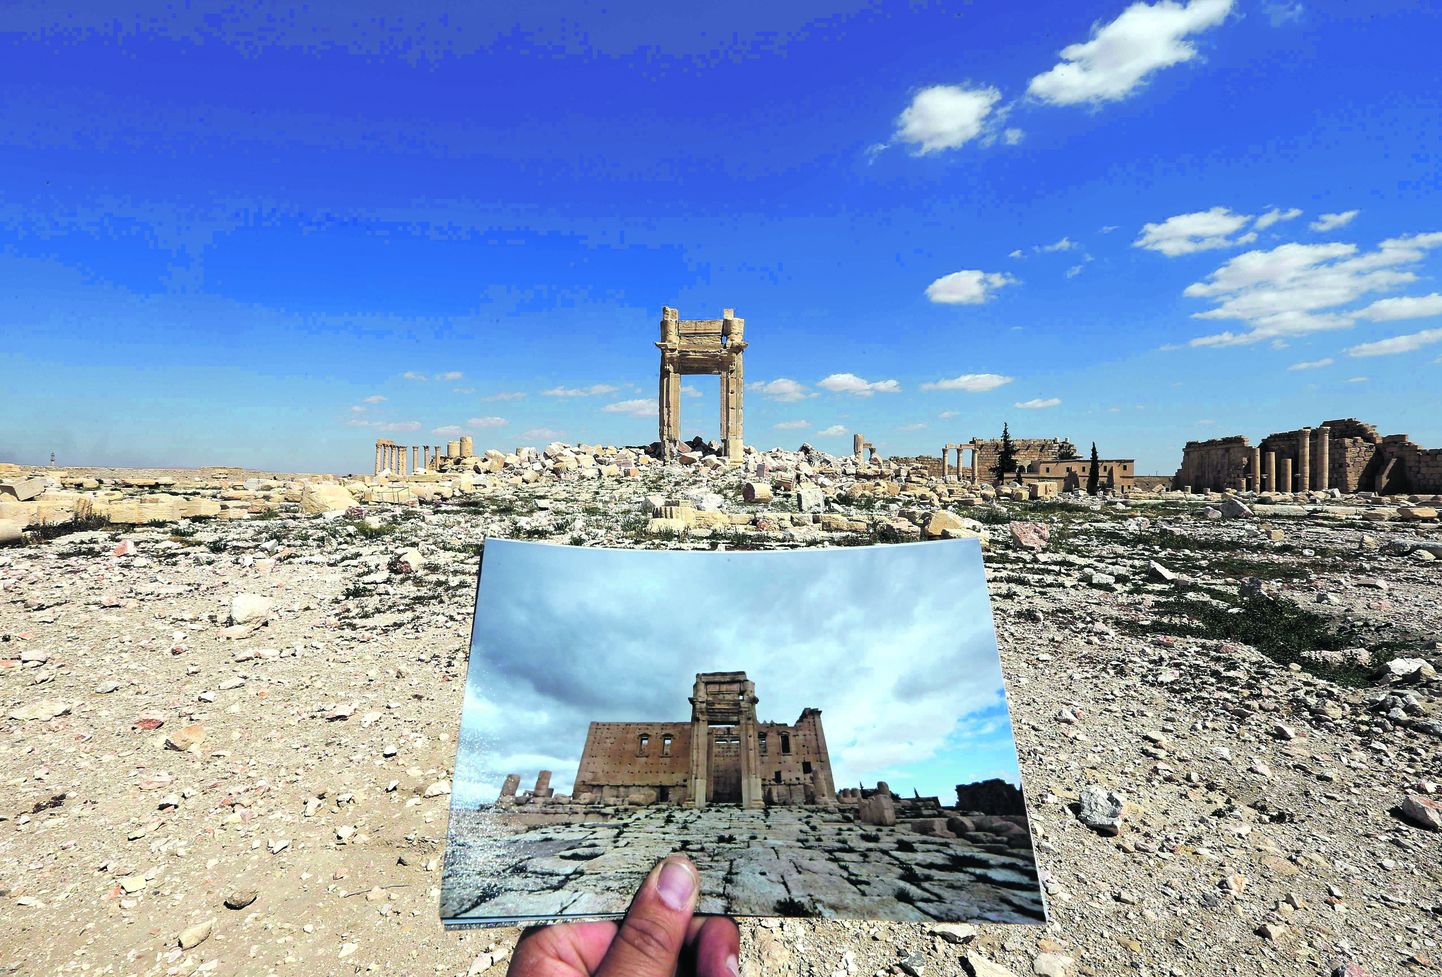 Развалины древнего храма Баала в городе Пальмира в Сирии. Дворец уничтожила радикальная террористическая группировка «Исламское государство».